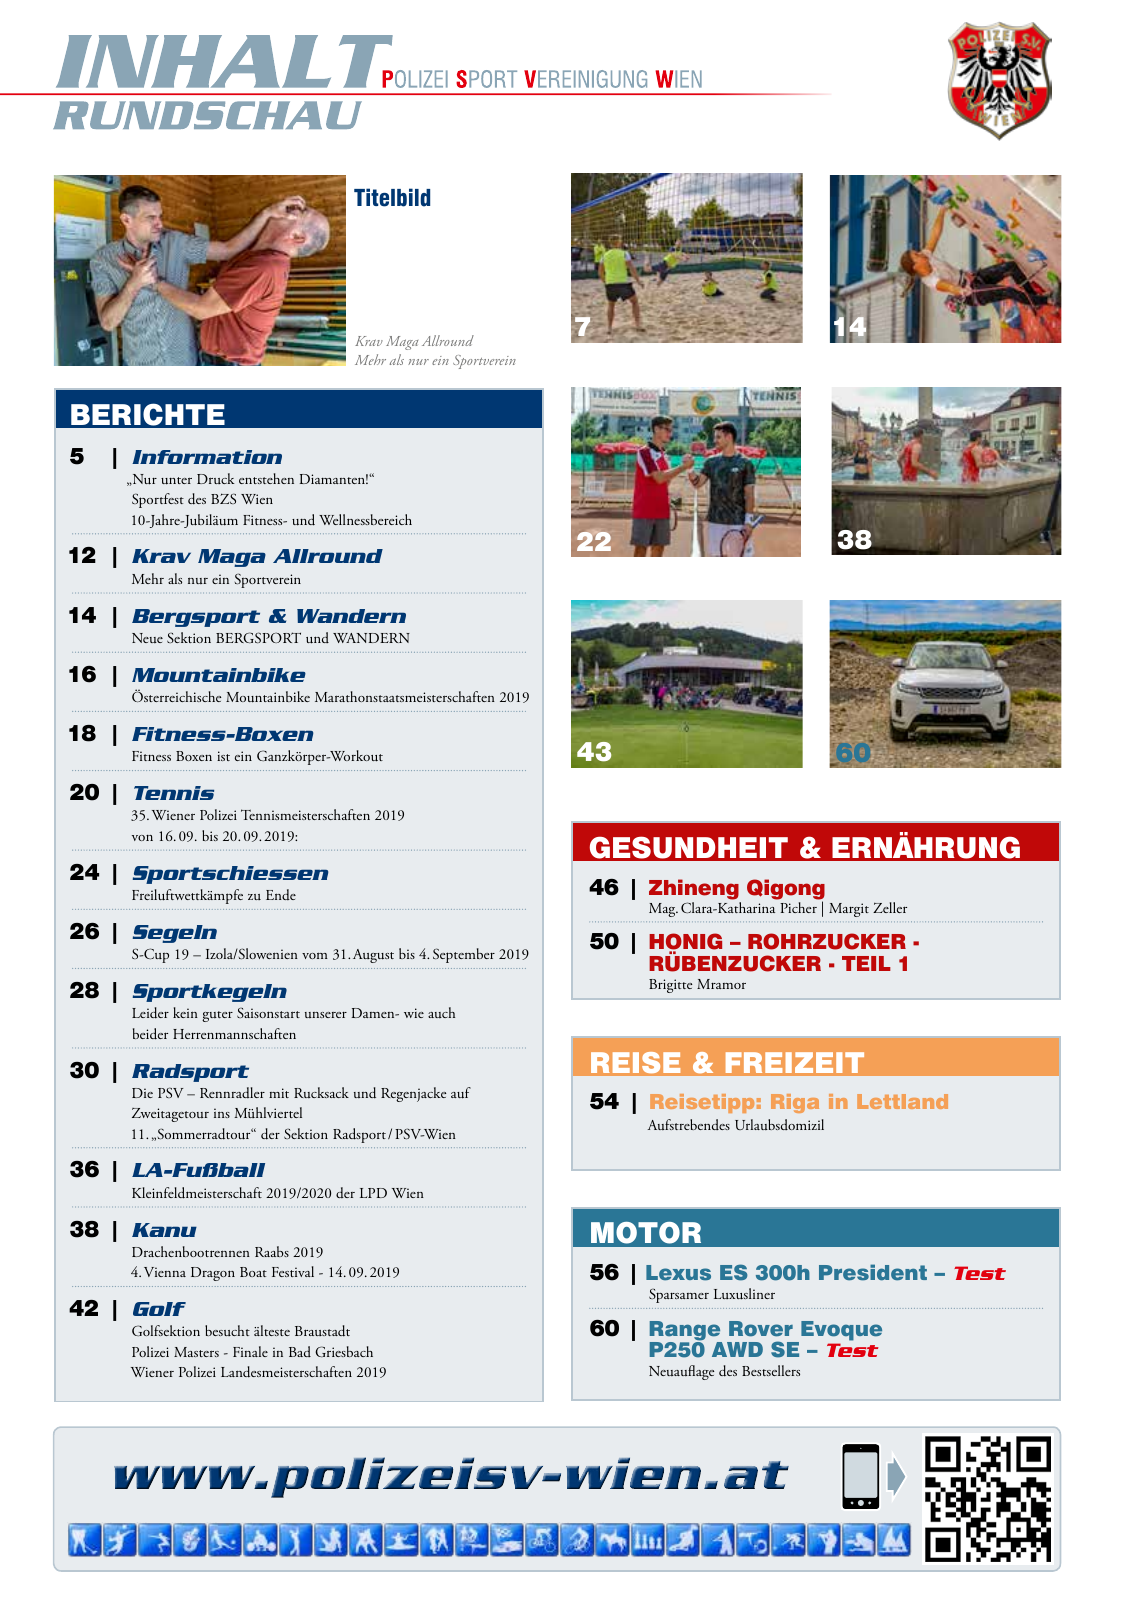 Vorschau Rundschau Polizei Sport 09-10/2019 Seite 3